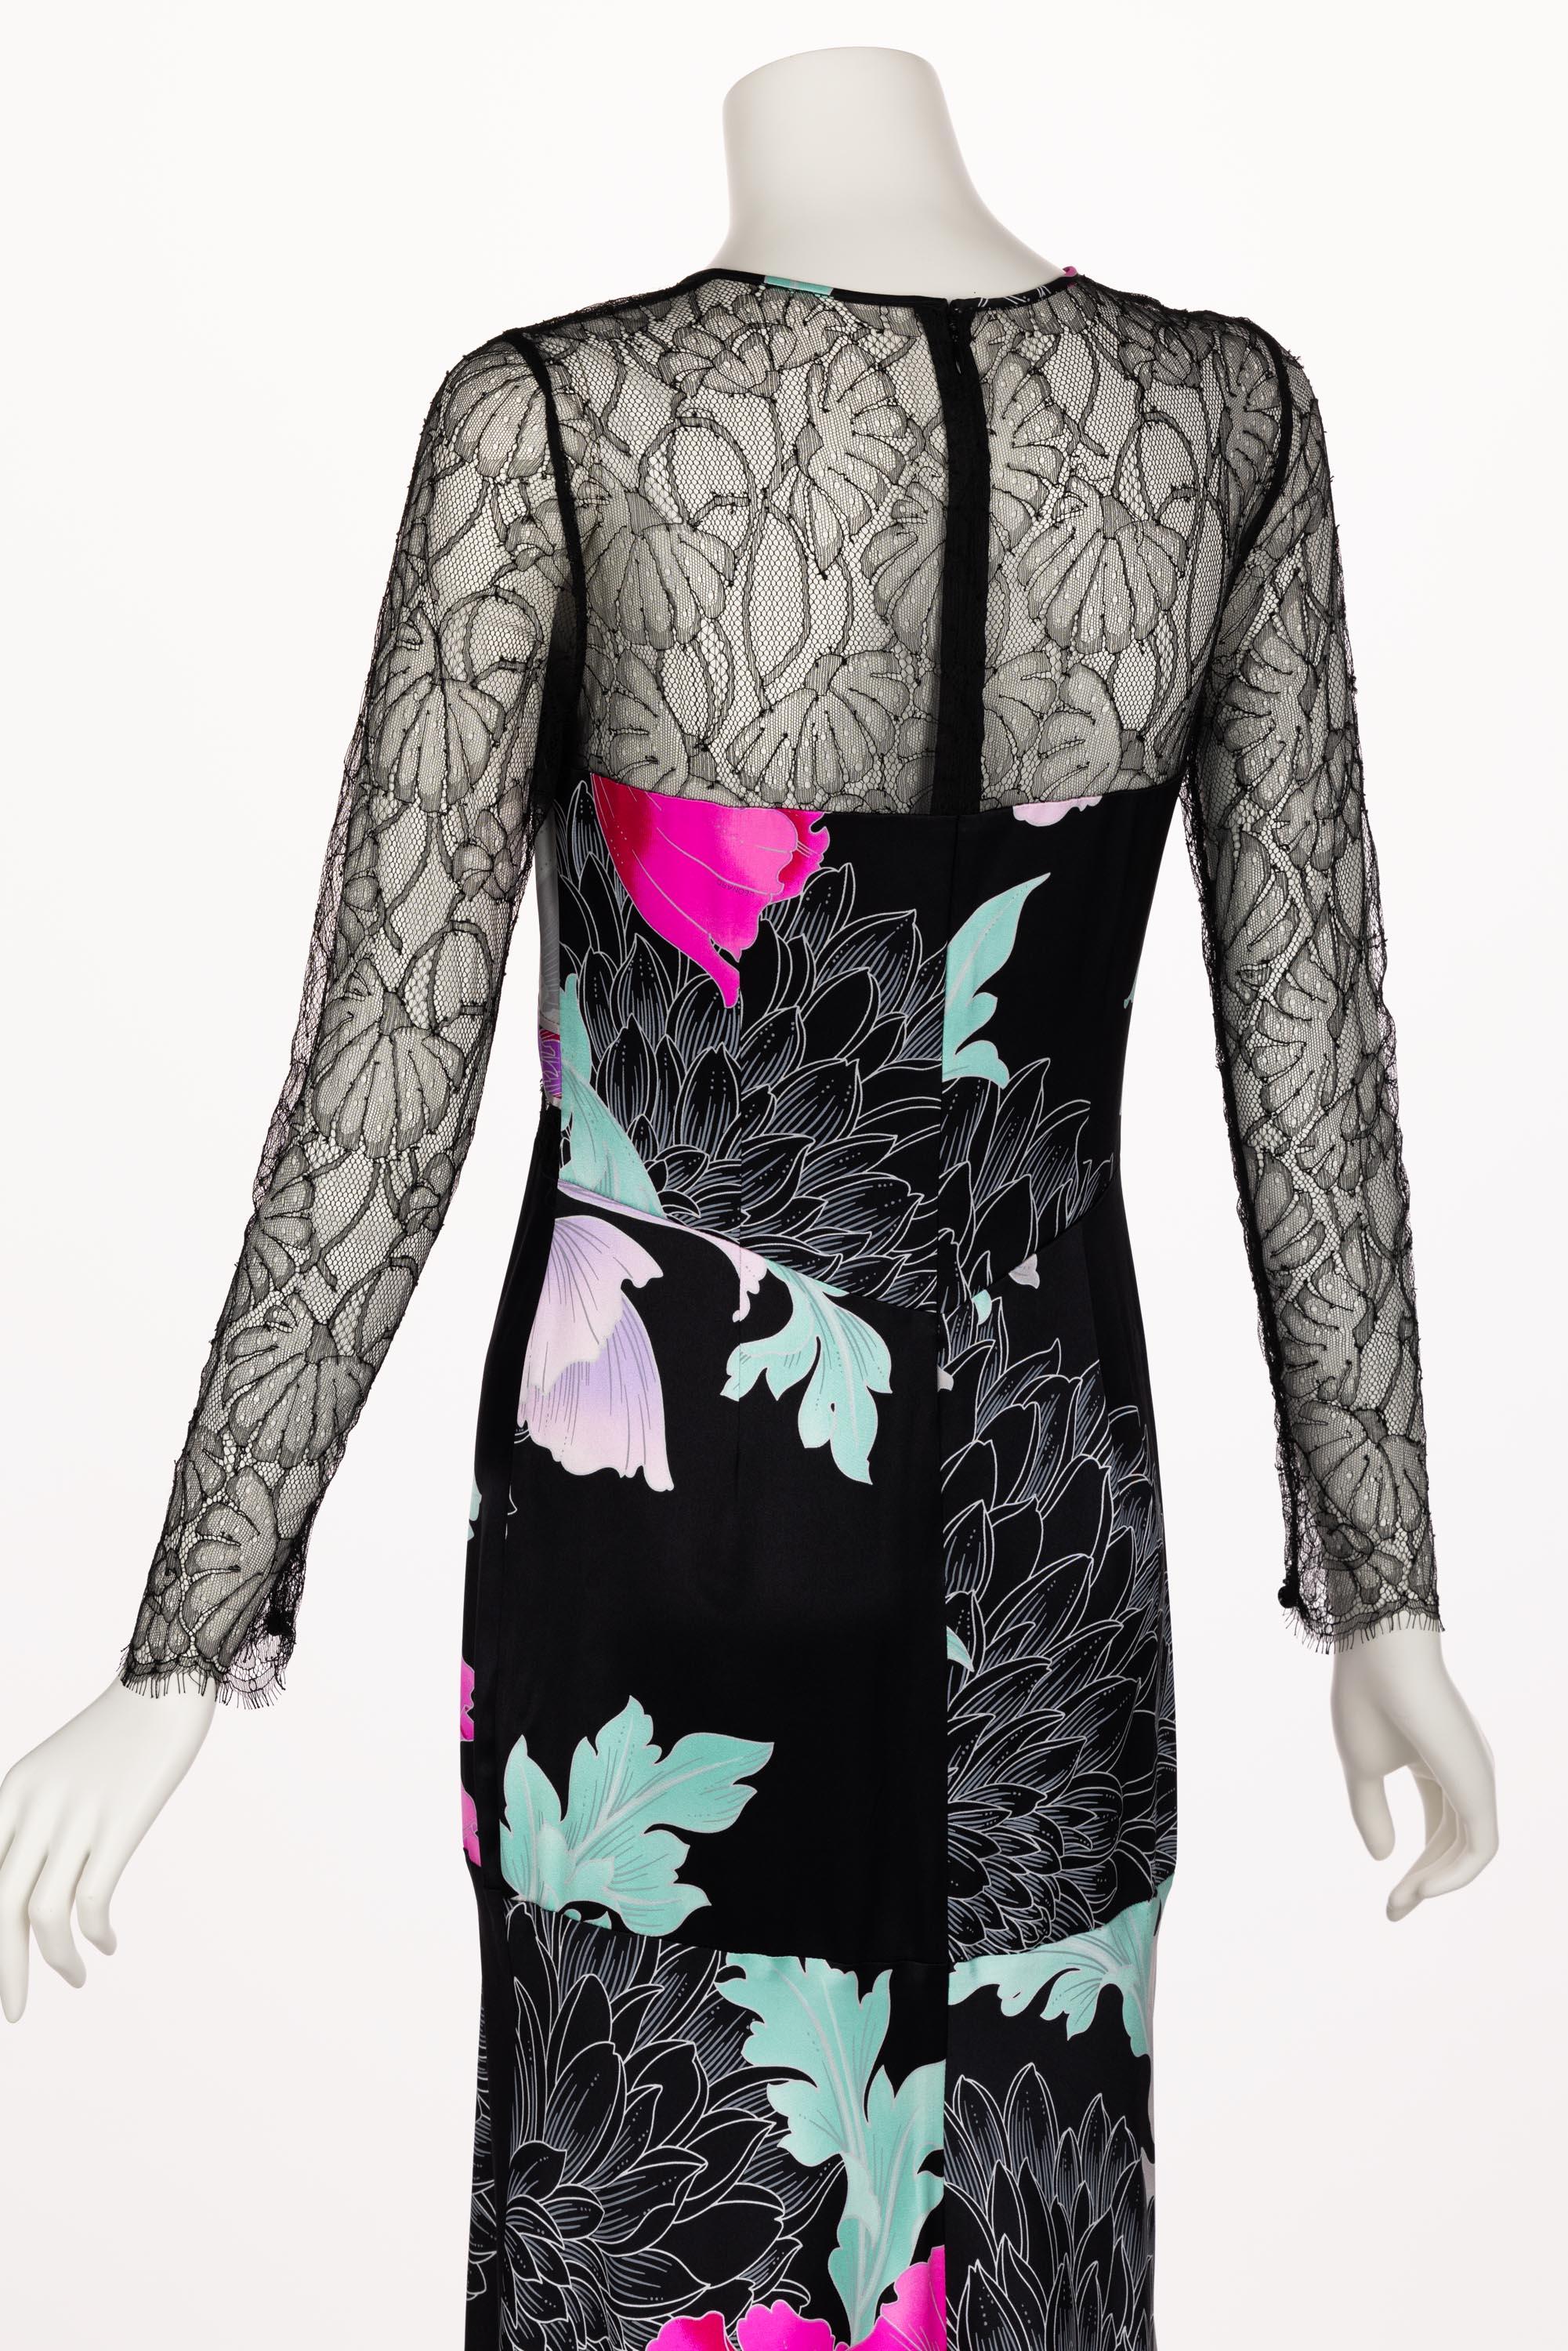  Leonard Paris Floral Silk Lace Inset Maxi Dress, 1990s For Sale 7